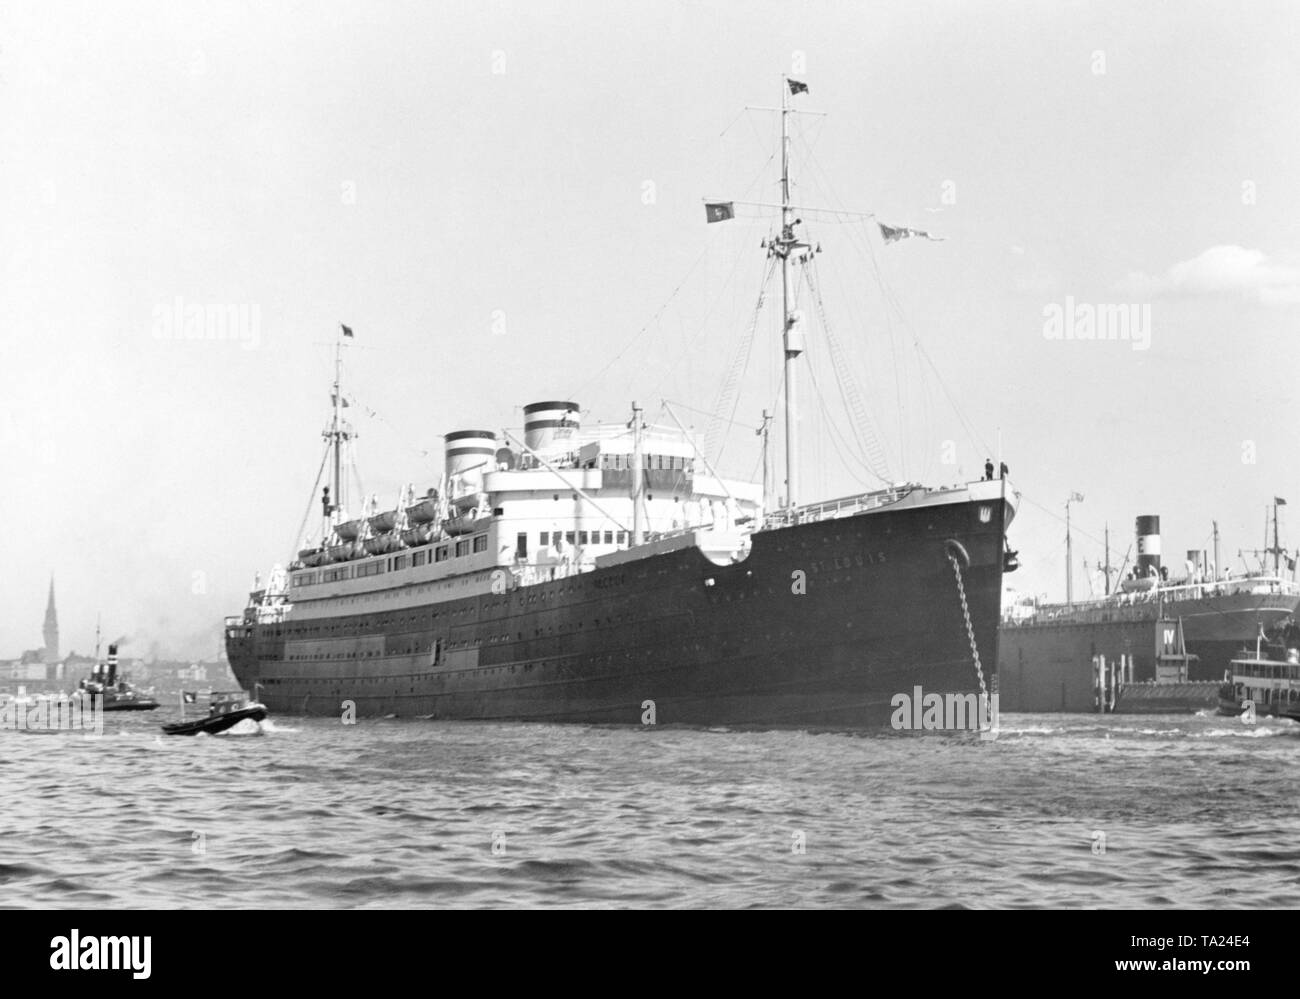 Die HAPAG Schiff t. Louis' wurde vor allem für seine Wanderungen in 1939 bekannt, als das Schiff mit mehr als 900 deutsche Juden an Bord war nicht erlaubt, entweder in Kuba oder in den Vereinigten Staaten zu geben. Stockfoto